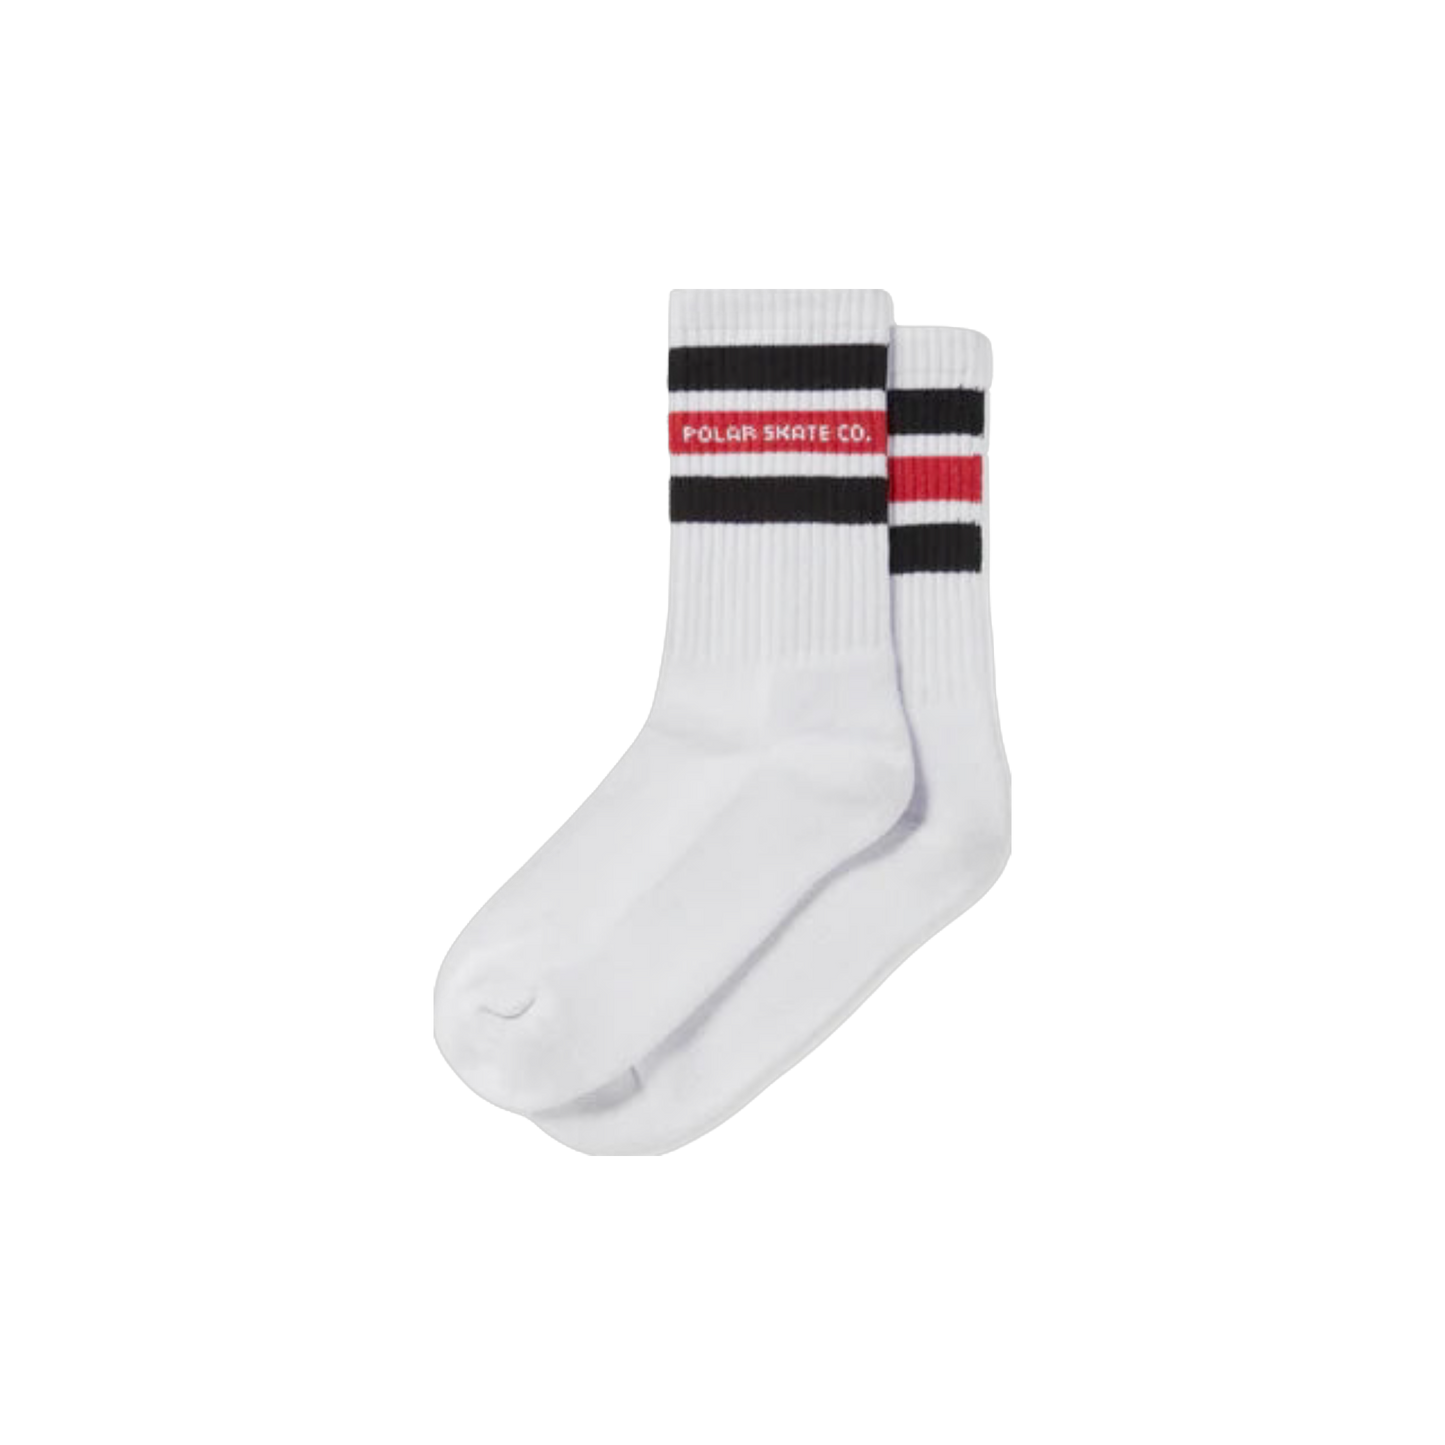 Polar Skate Co. - Fat Stripe Socks - White / Black / Red